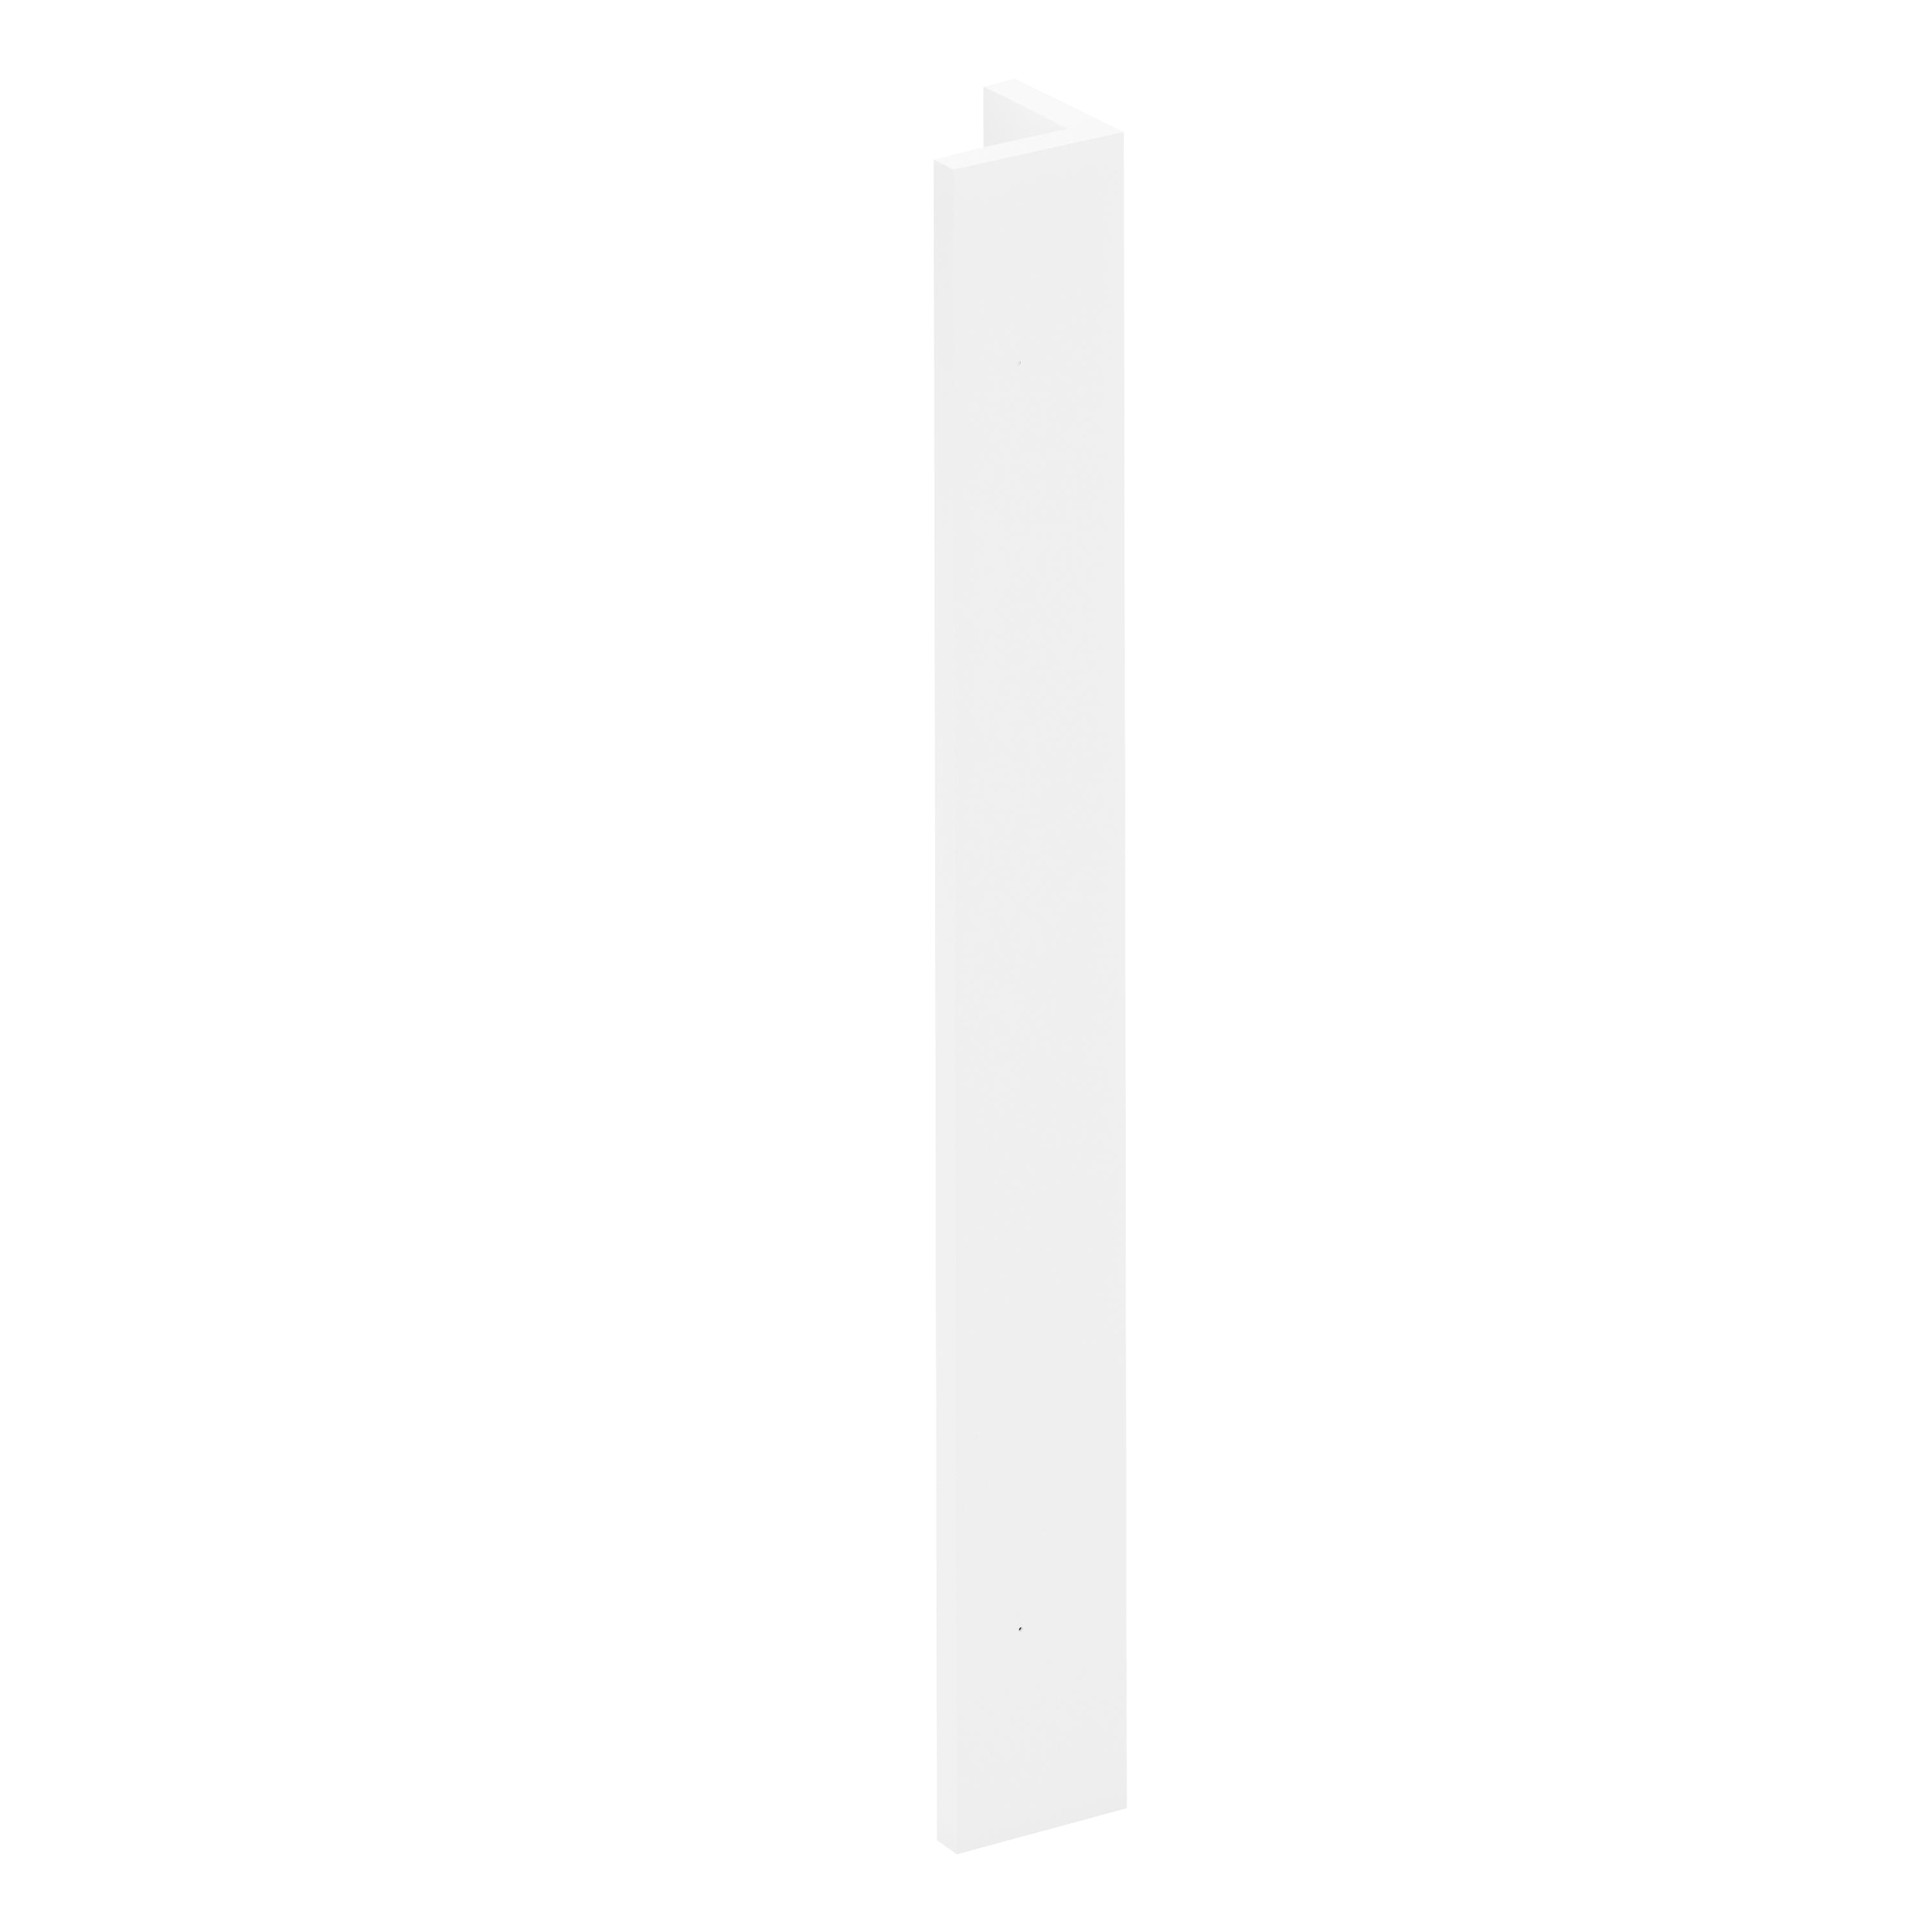 Regleta angular de cocina toscane blanco mate h 76.8 - 90 x 90 cm